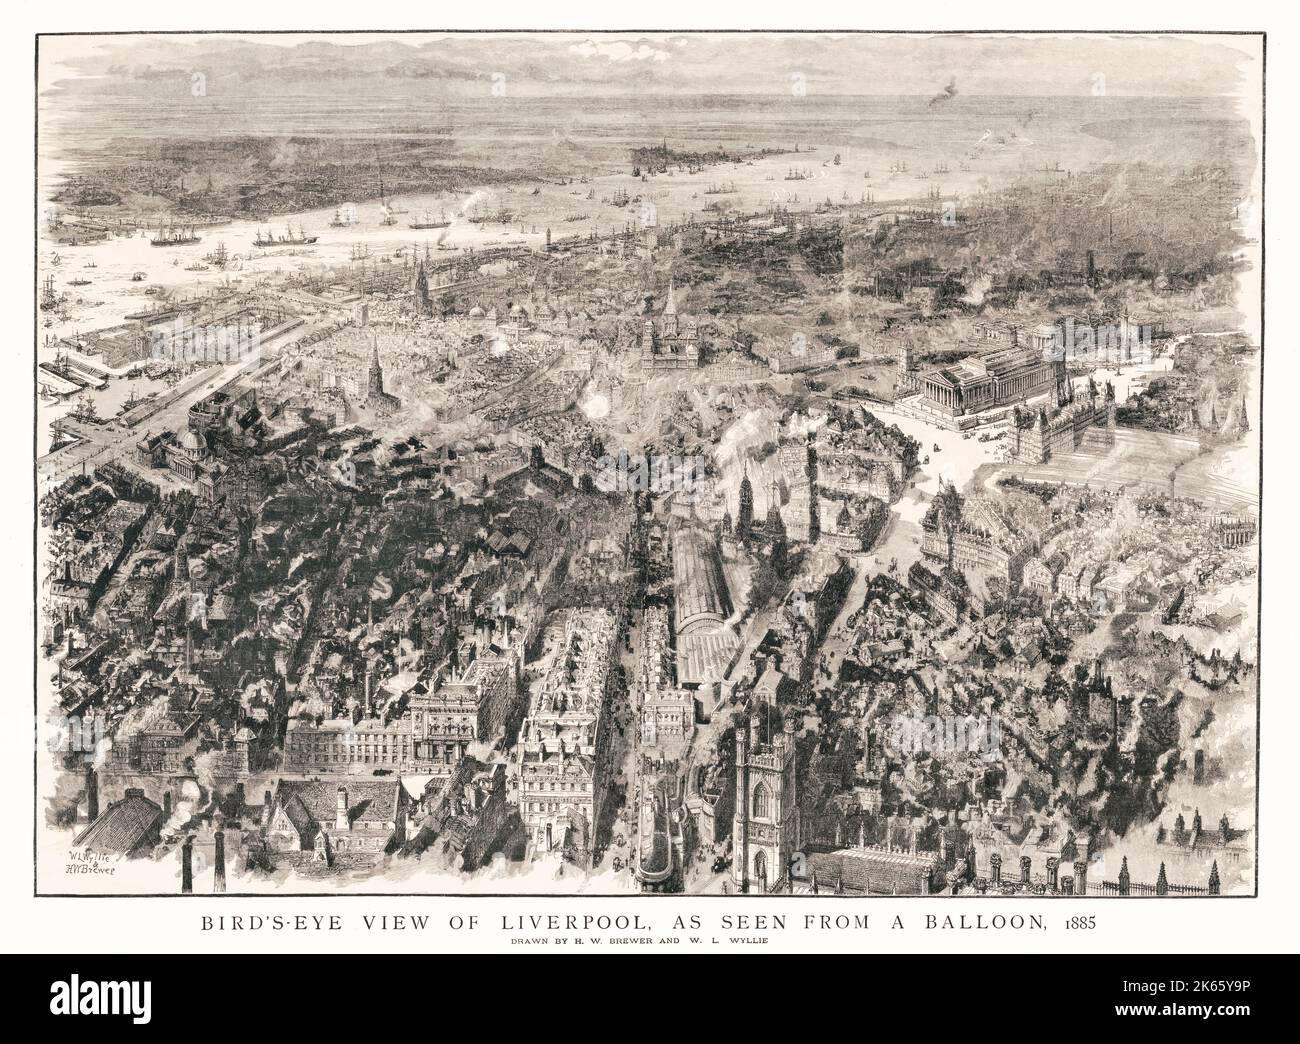 Eine Luftaufnahme von Liverpool, die von H W Brewer und W L Wyllie im Jahr 1885 gezeichnet wurde und das Stadtzentrum mit der St. George's Hall im Vordergrund zeigt. Die Zeichnung zeigt auch die St. George's Church, die 1825 an der Stelle des alten Schlosses erbaut wurde, bis 1899, als sie abgerissen und das Victoria Monument 1902 errichtet wurde. Stockfoto